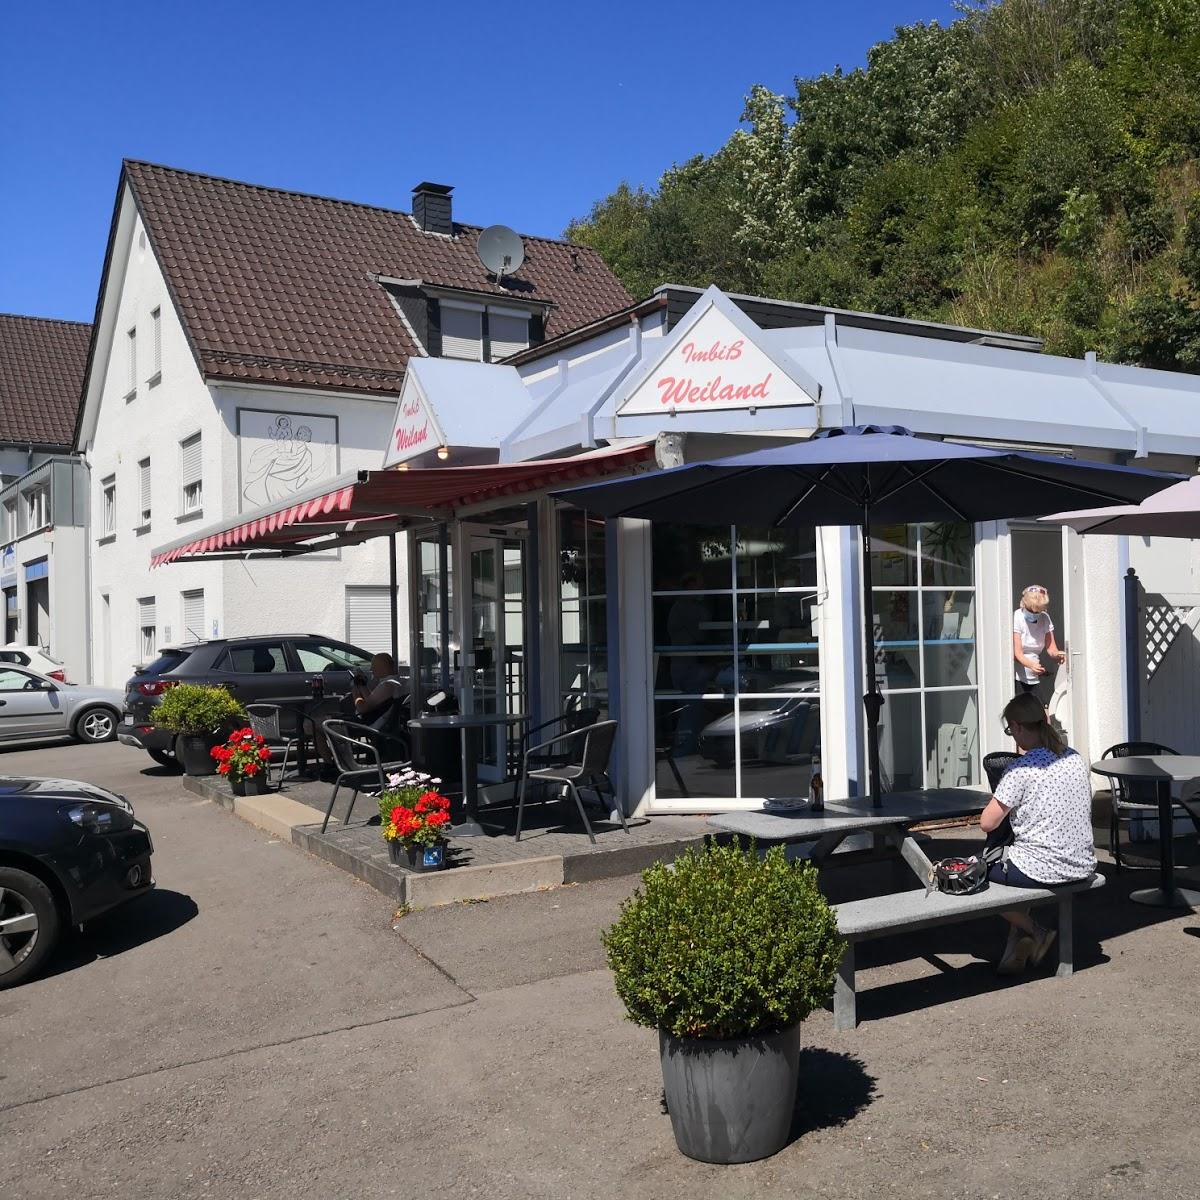 Restaurant "Weiland" in Drolshagen